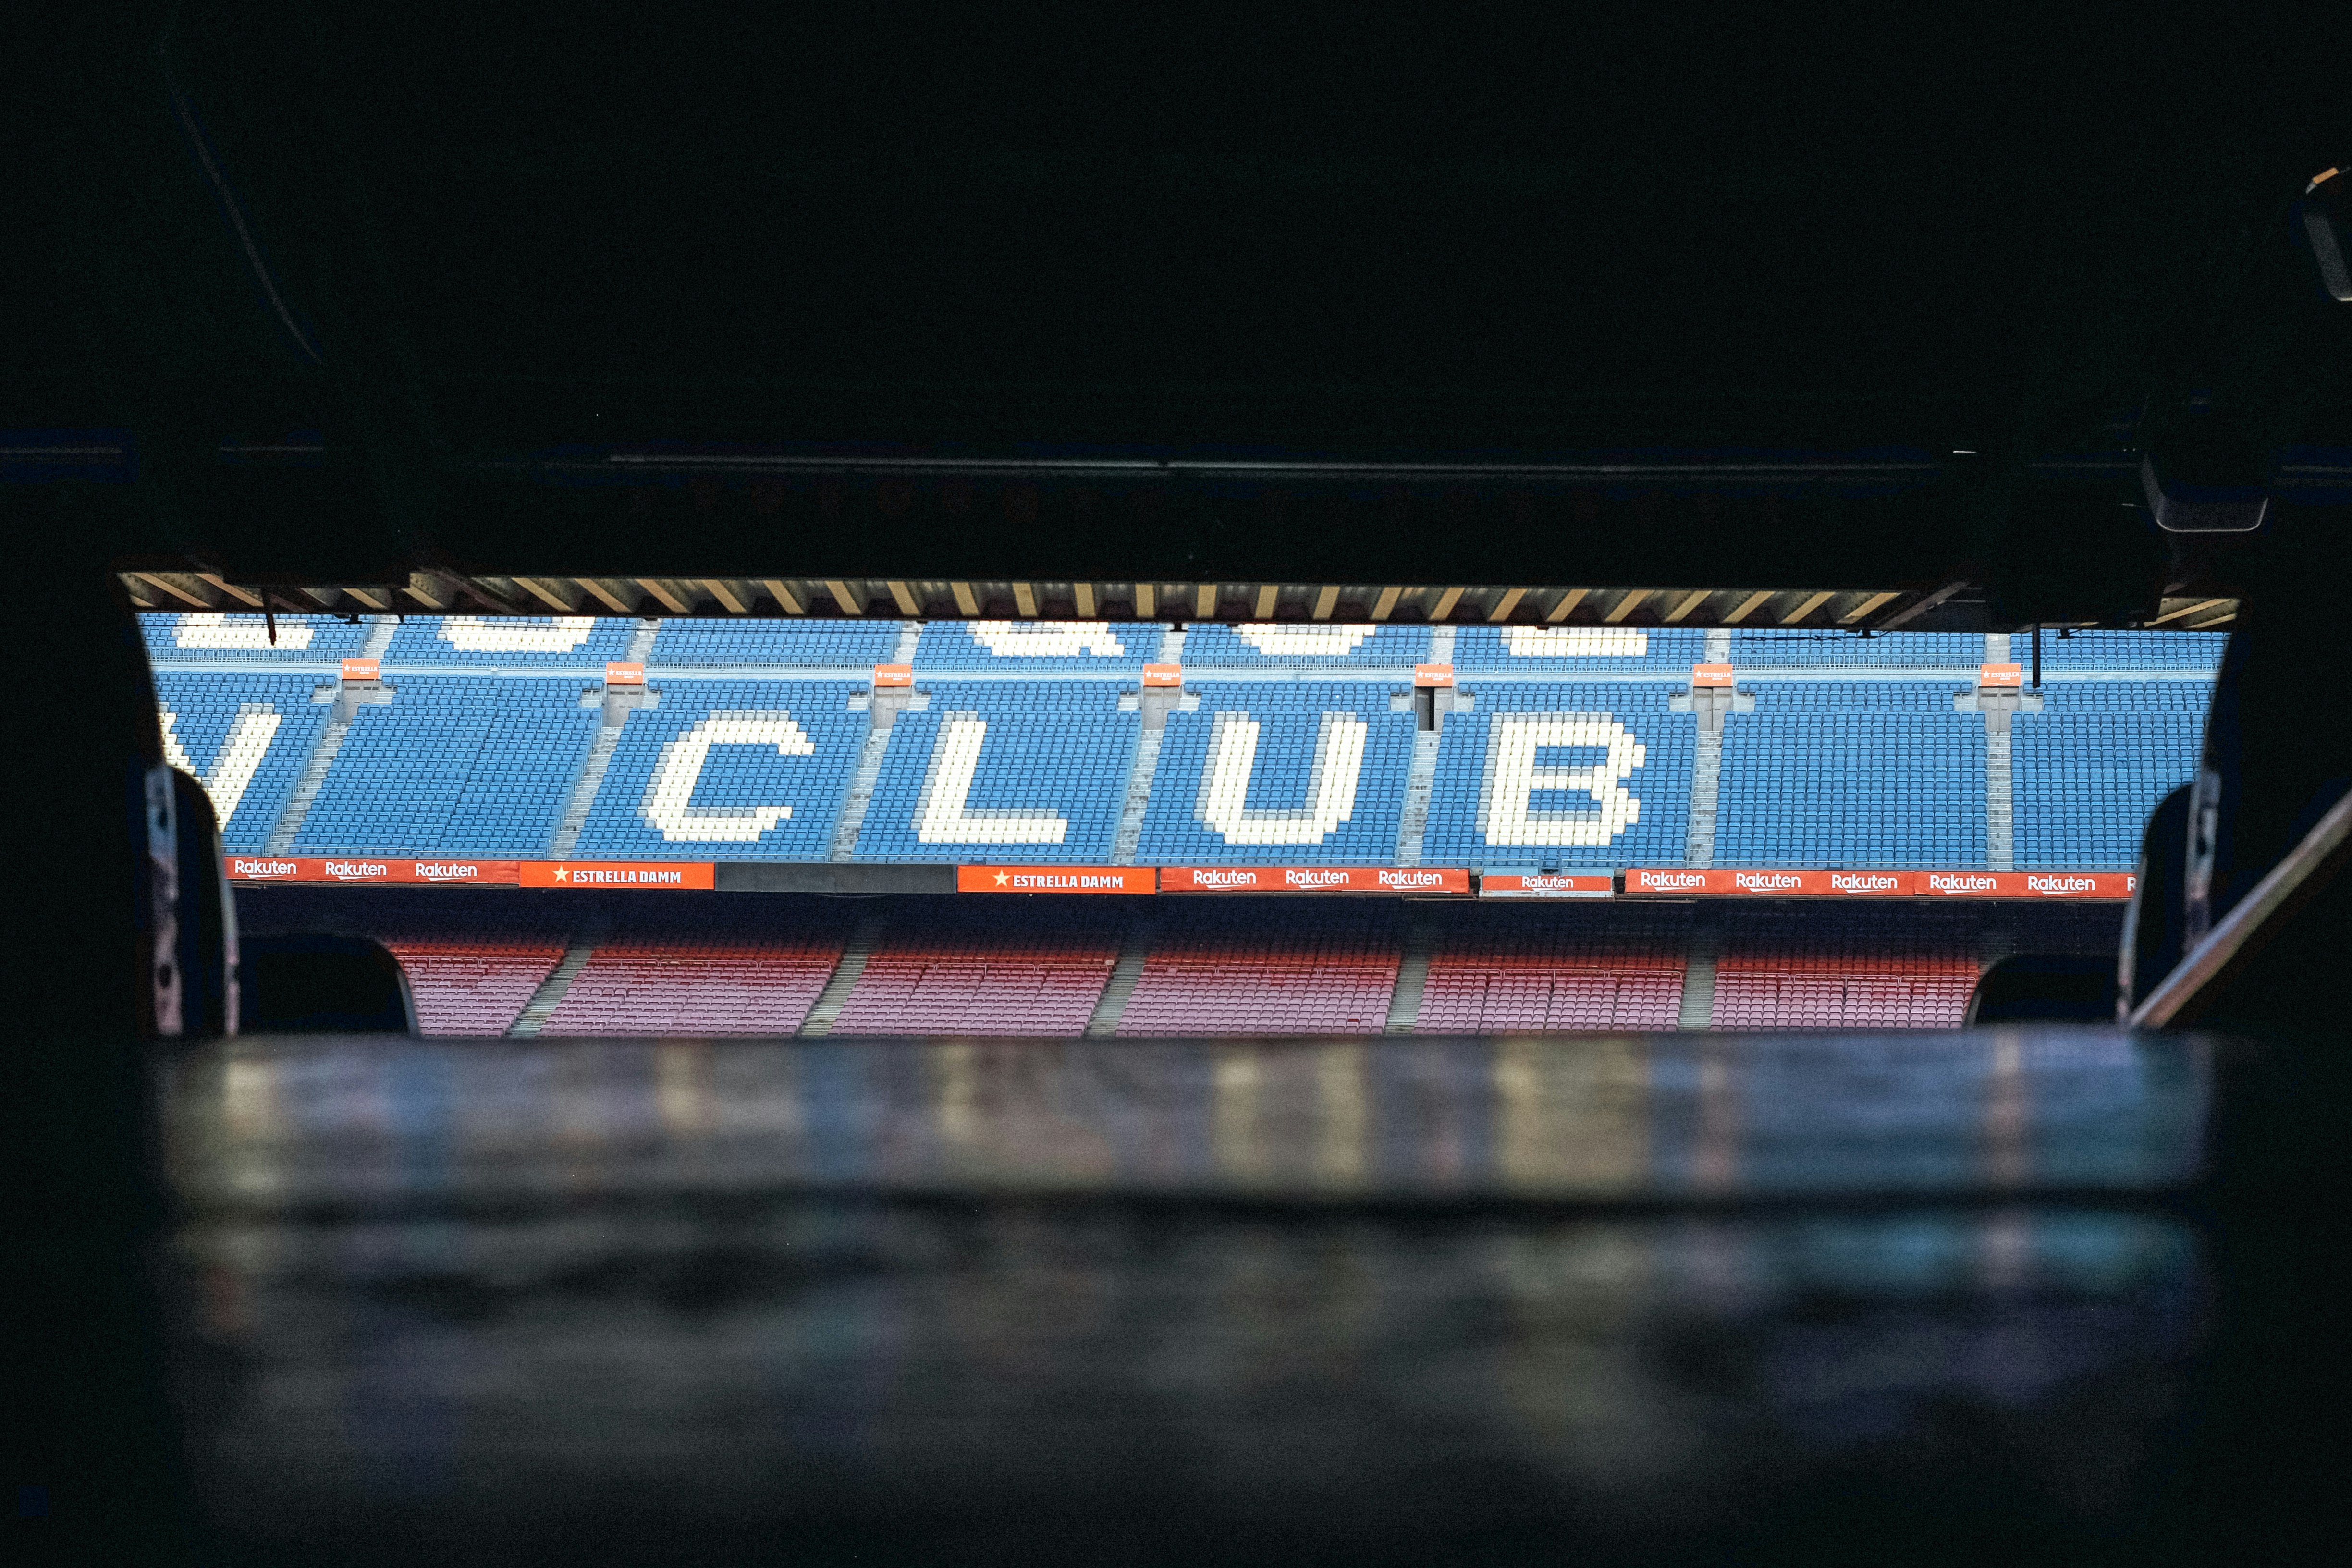 Club signage